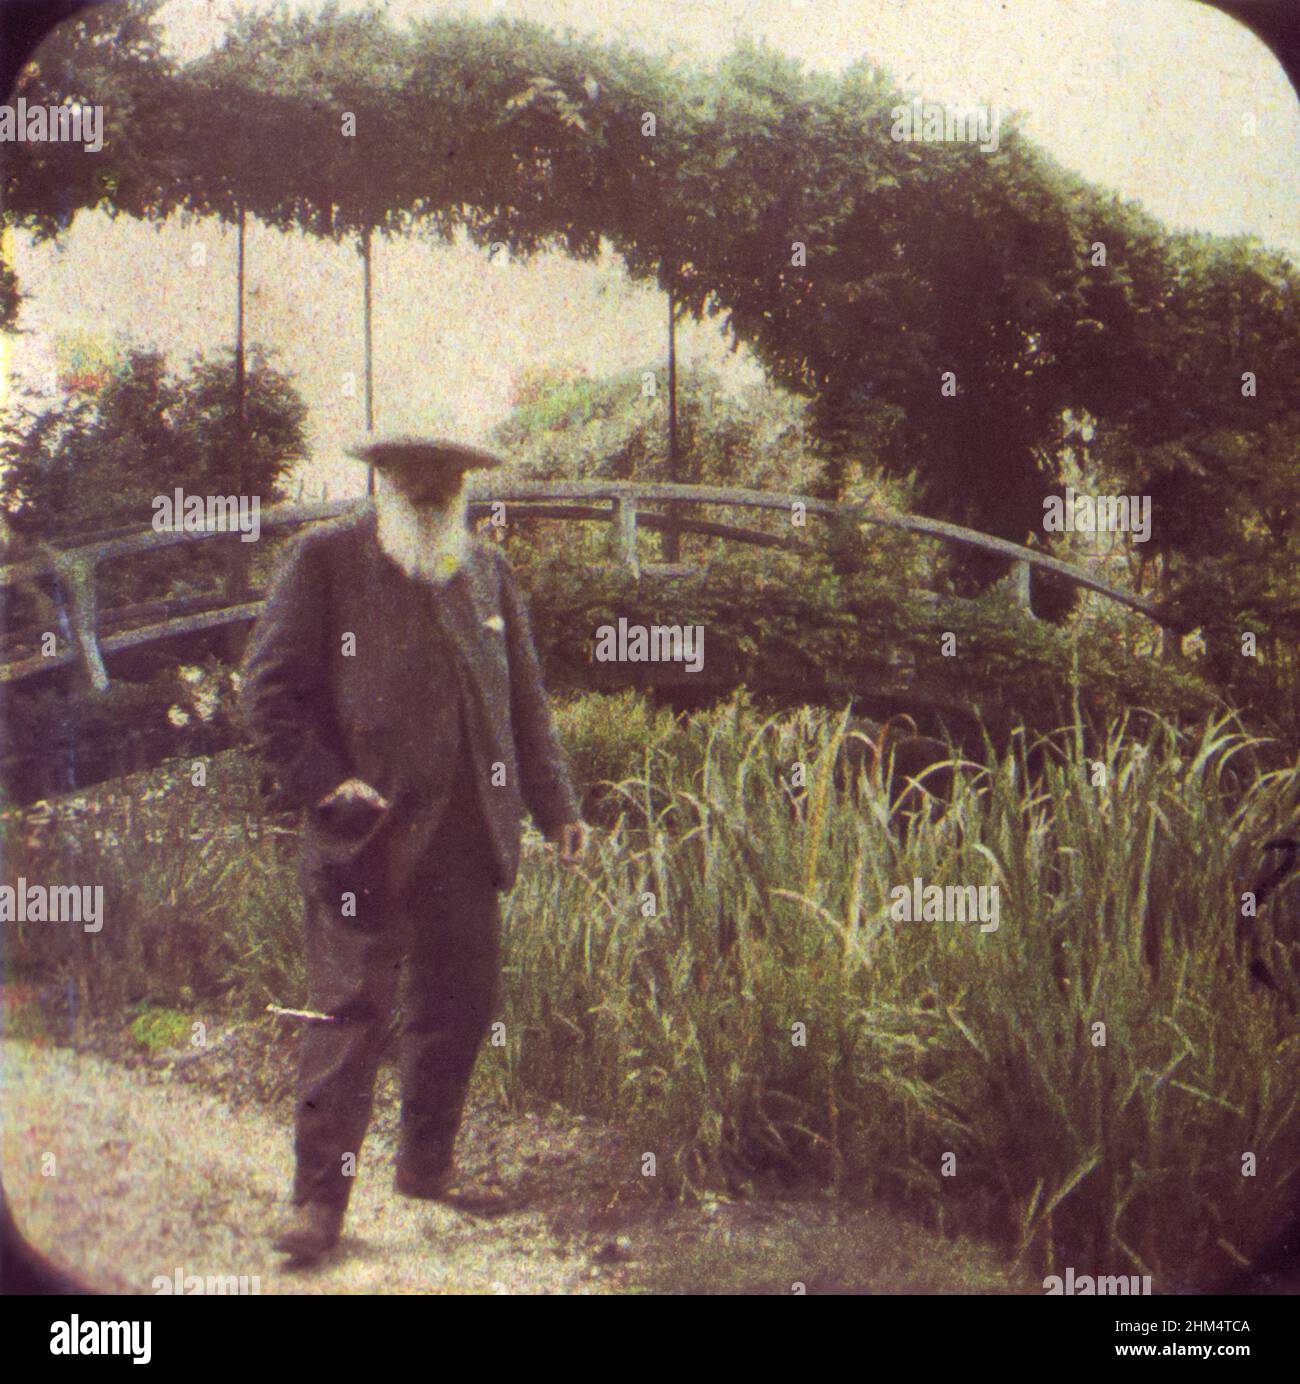 Claude Monet (1840-1926) peintre impressionniste français photographié dans son jardin de Giverny, France en 1917 par Etienne Clémentel (1864-1936) en utilisant le procédé Autochrome lumière de la photographie couleur développé par les frères lumière. Banque D'Images